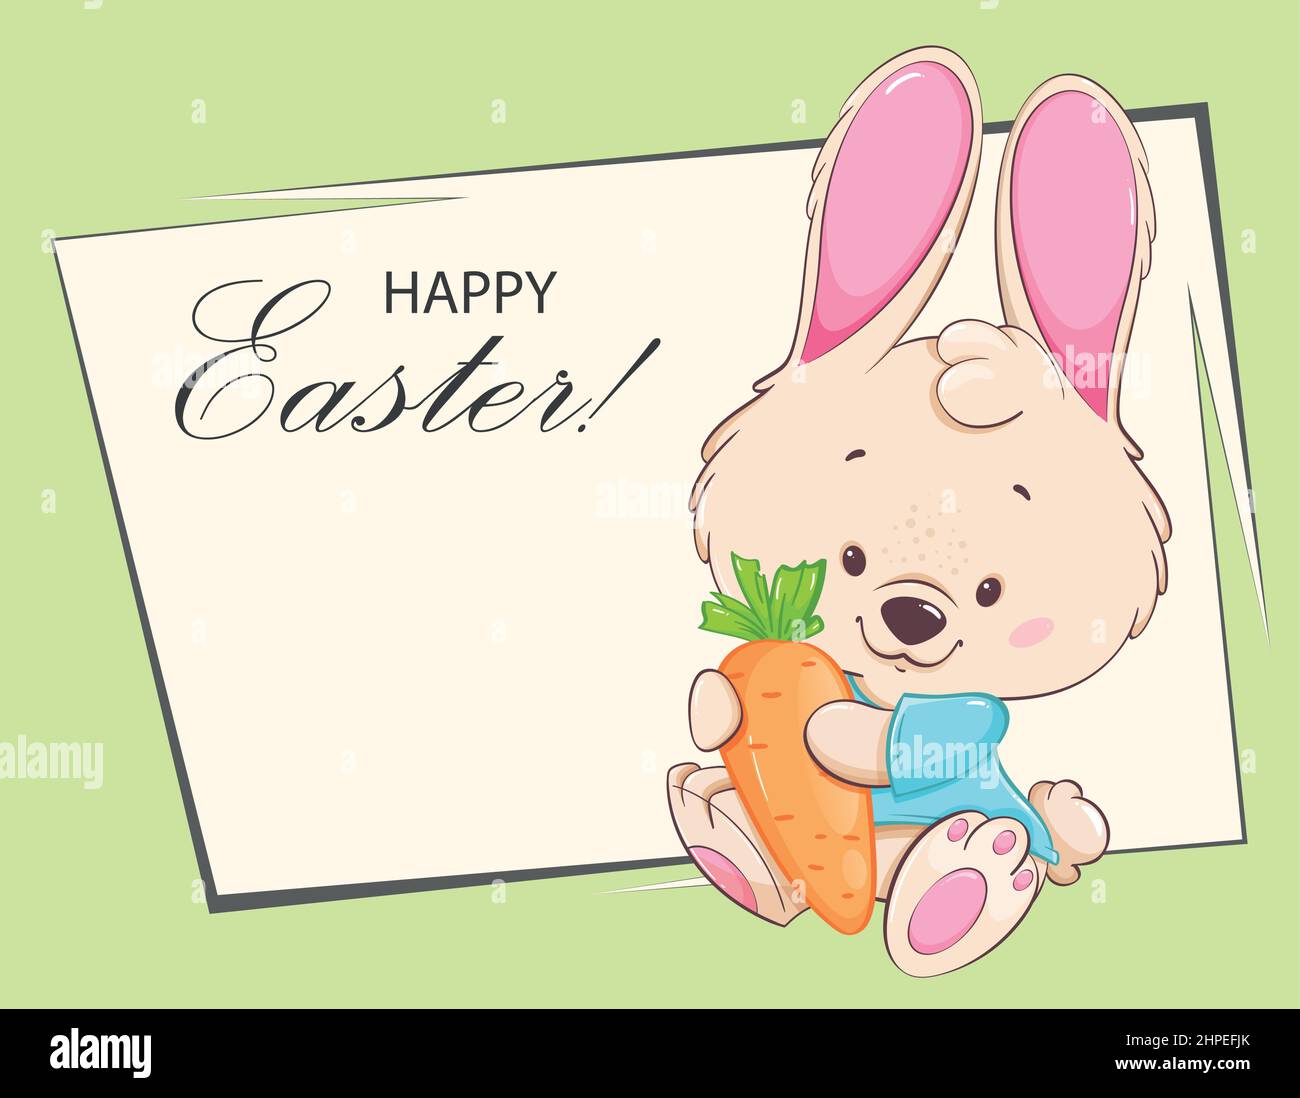 Frohe Ostern Grußkarte. Lustige Zeichentrickfigur Kaninchen halten Karotte. Osterhase. Vektorgrafik für Aktien Stock Vektor